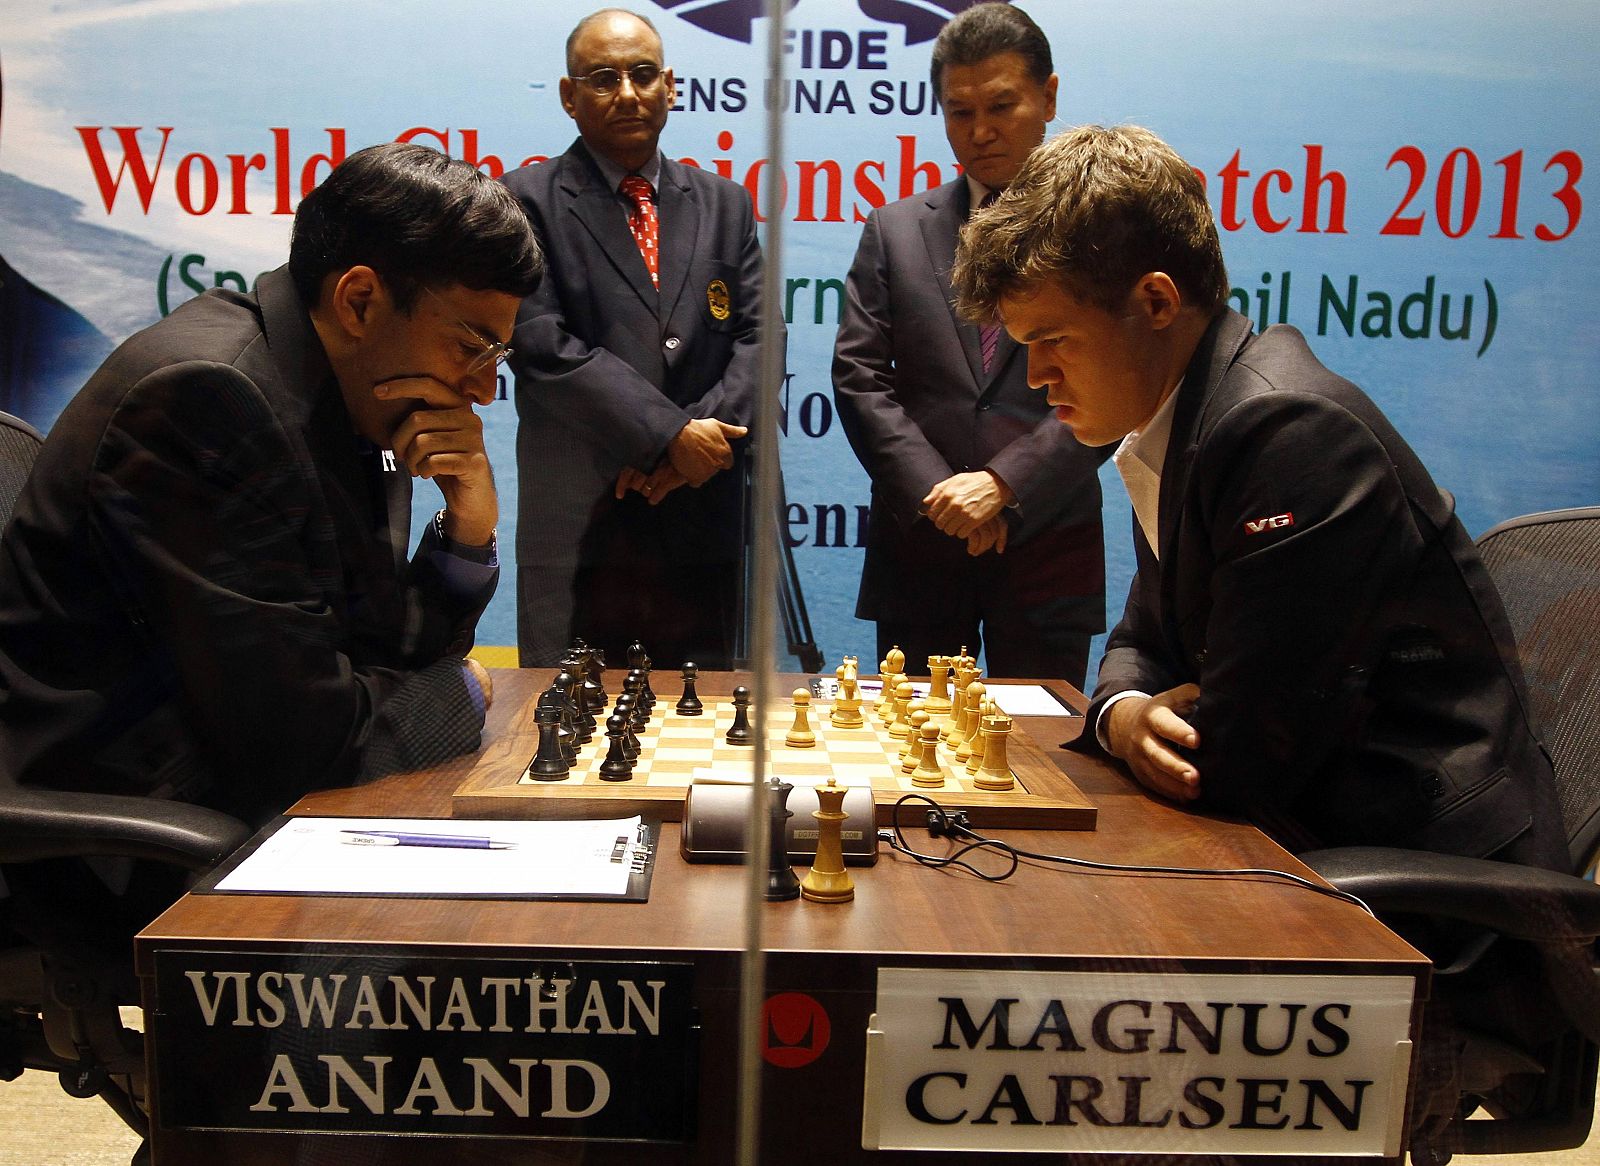 Carlssen y Anand, en el Mundial de ajedrez